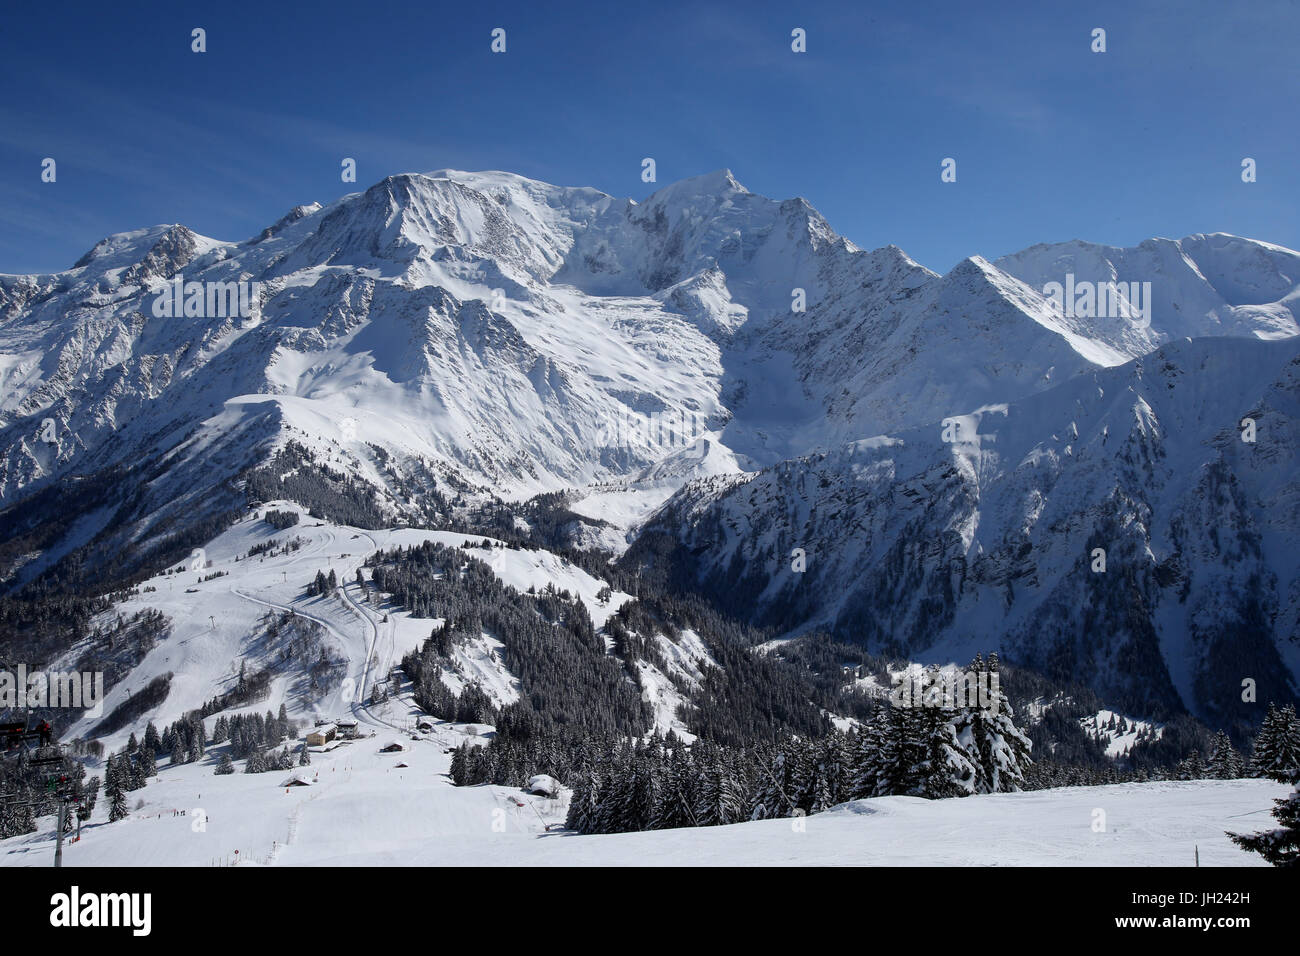 Alpes françaises. Massif du Mont-Blanc. Le Mont Blanc (4 810 m) est le point le plus élevé en Europe de l'ouest. La France. Banque D'Images